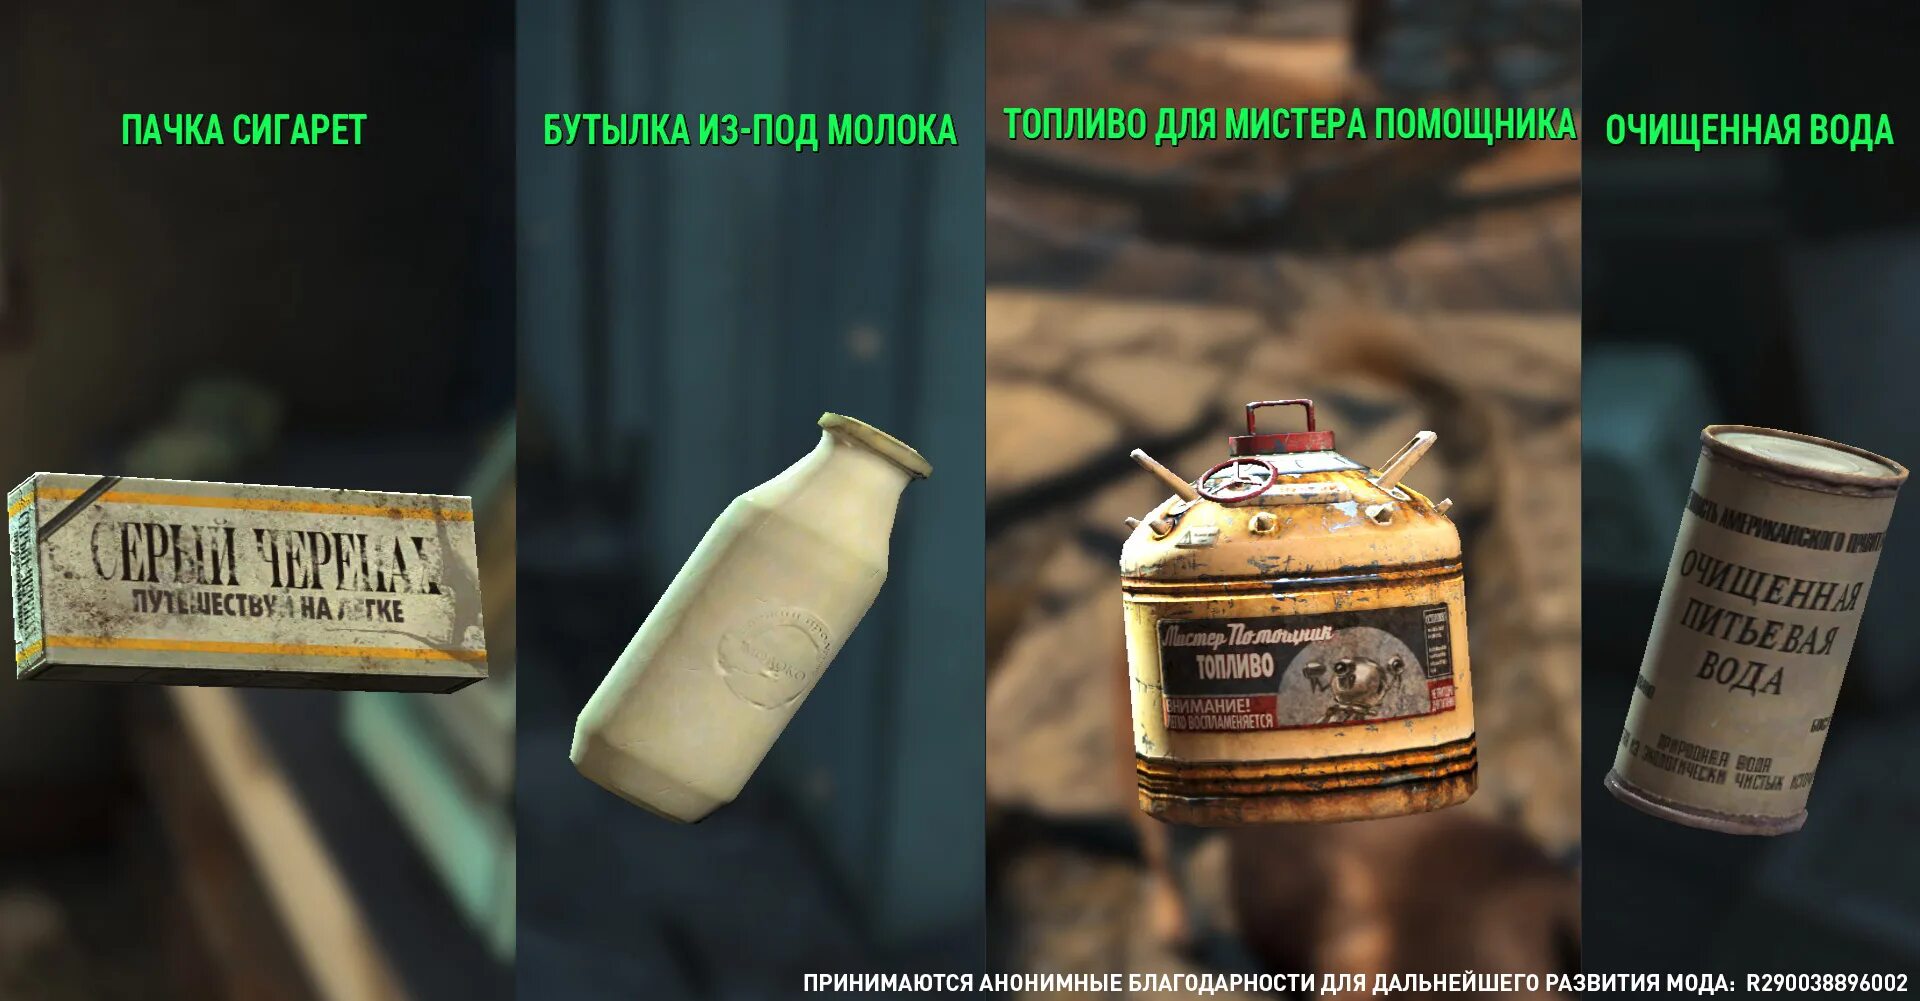 Как переводится fallout. Fallout 4 топливо для мистера помощника. Фоллаут перевод. Фоллаут 3 русский надписи. Текстура перевод.